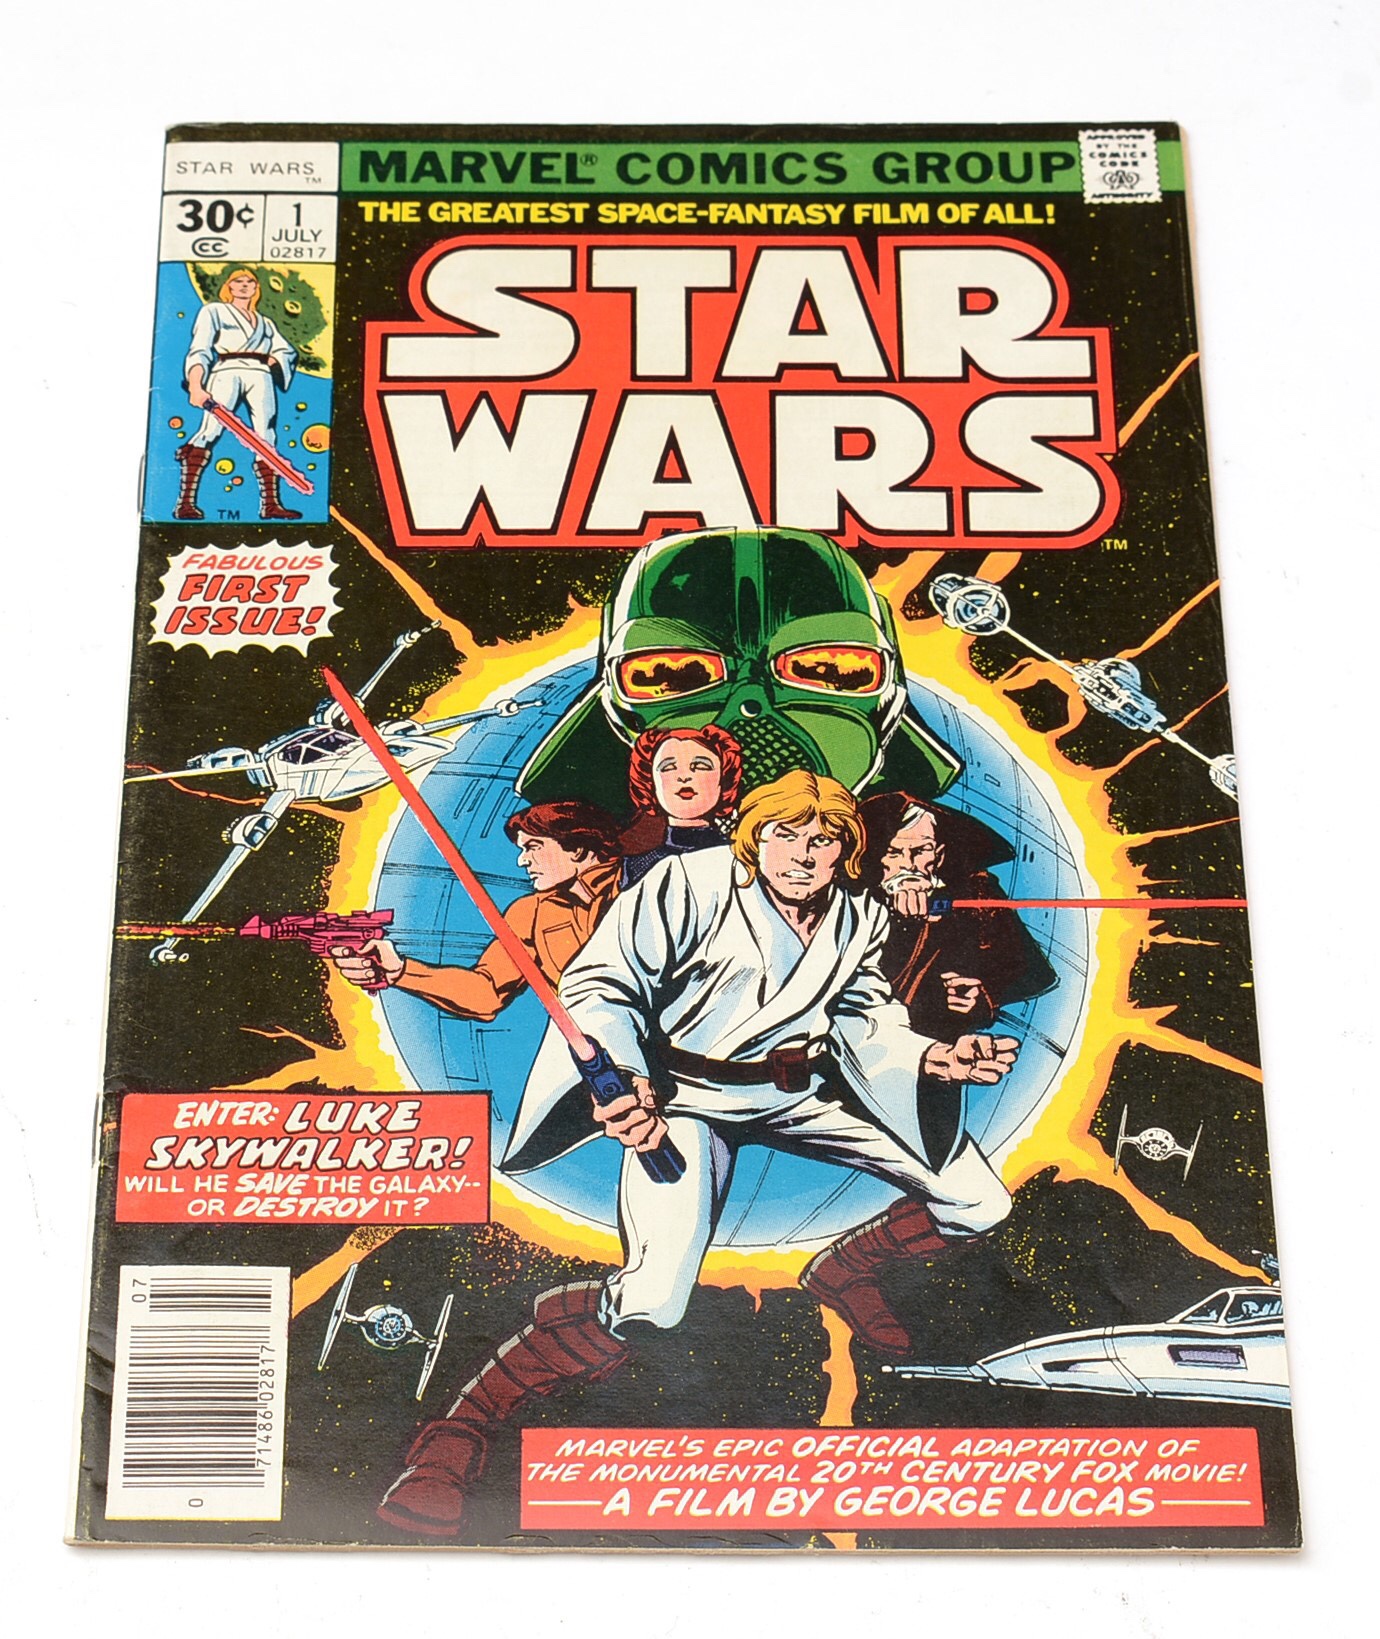 Star Wars #1 (Marvel Comics)